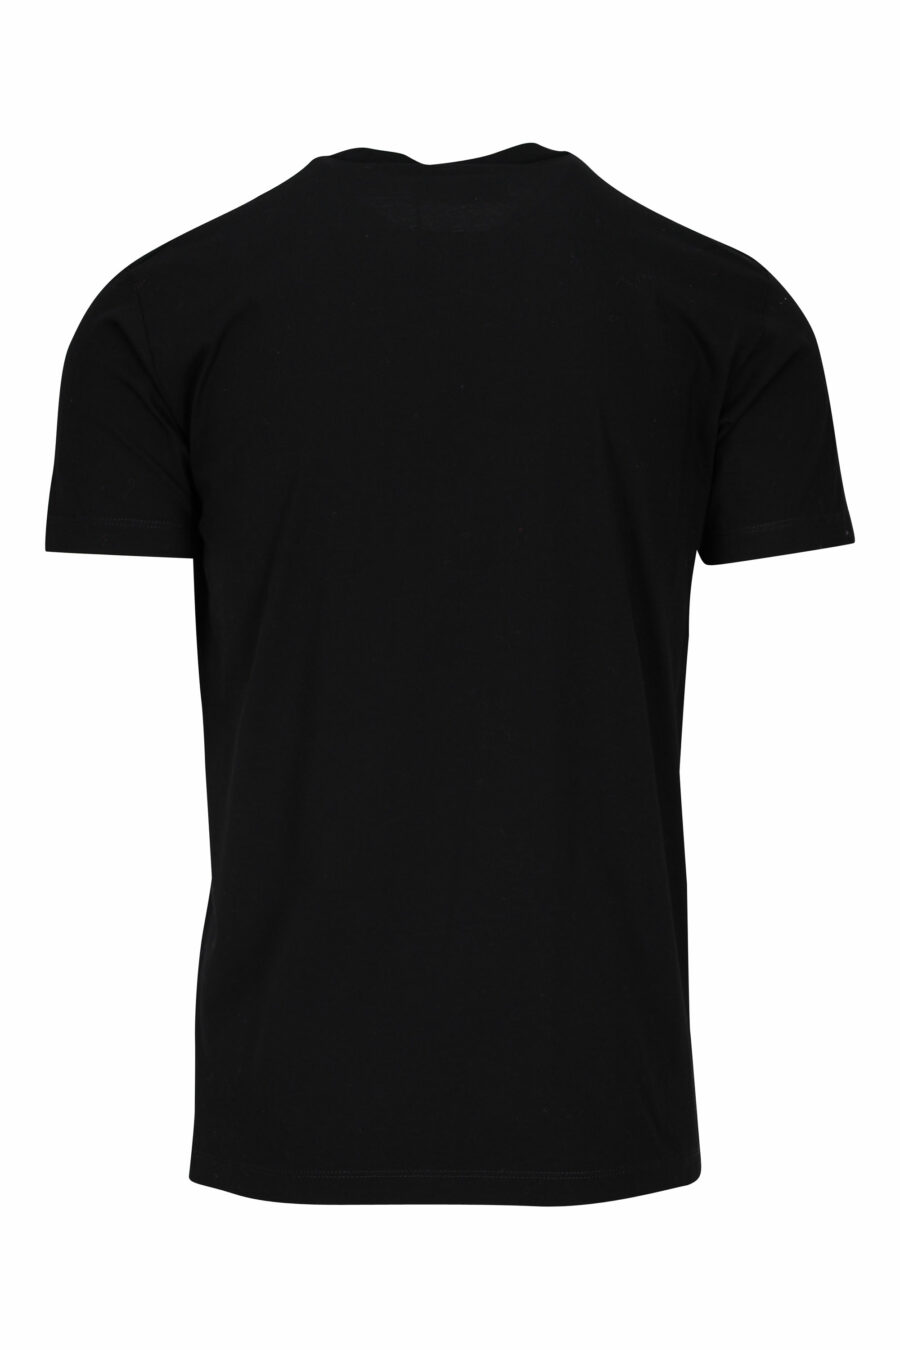 T-shirt preta com logótipo prateado e estampado de porta-moedas - 8052134940457 1